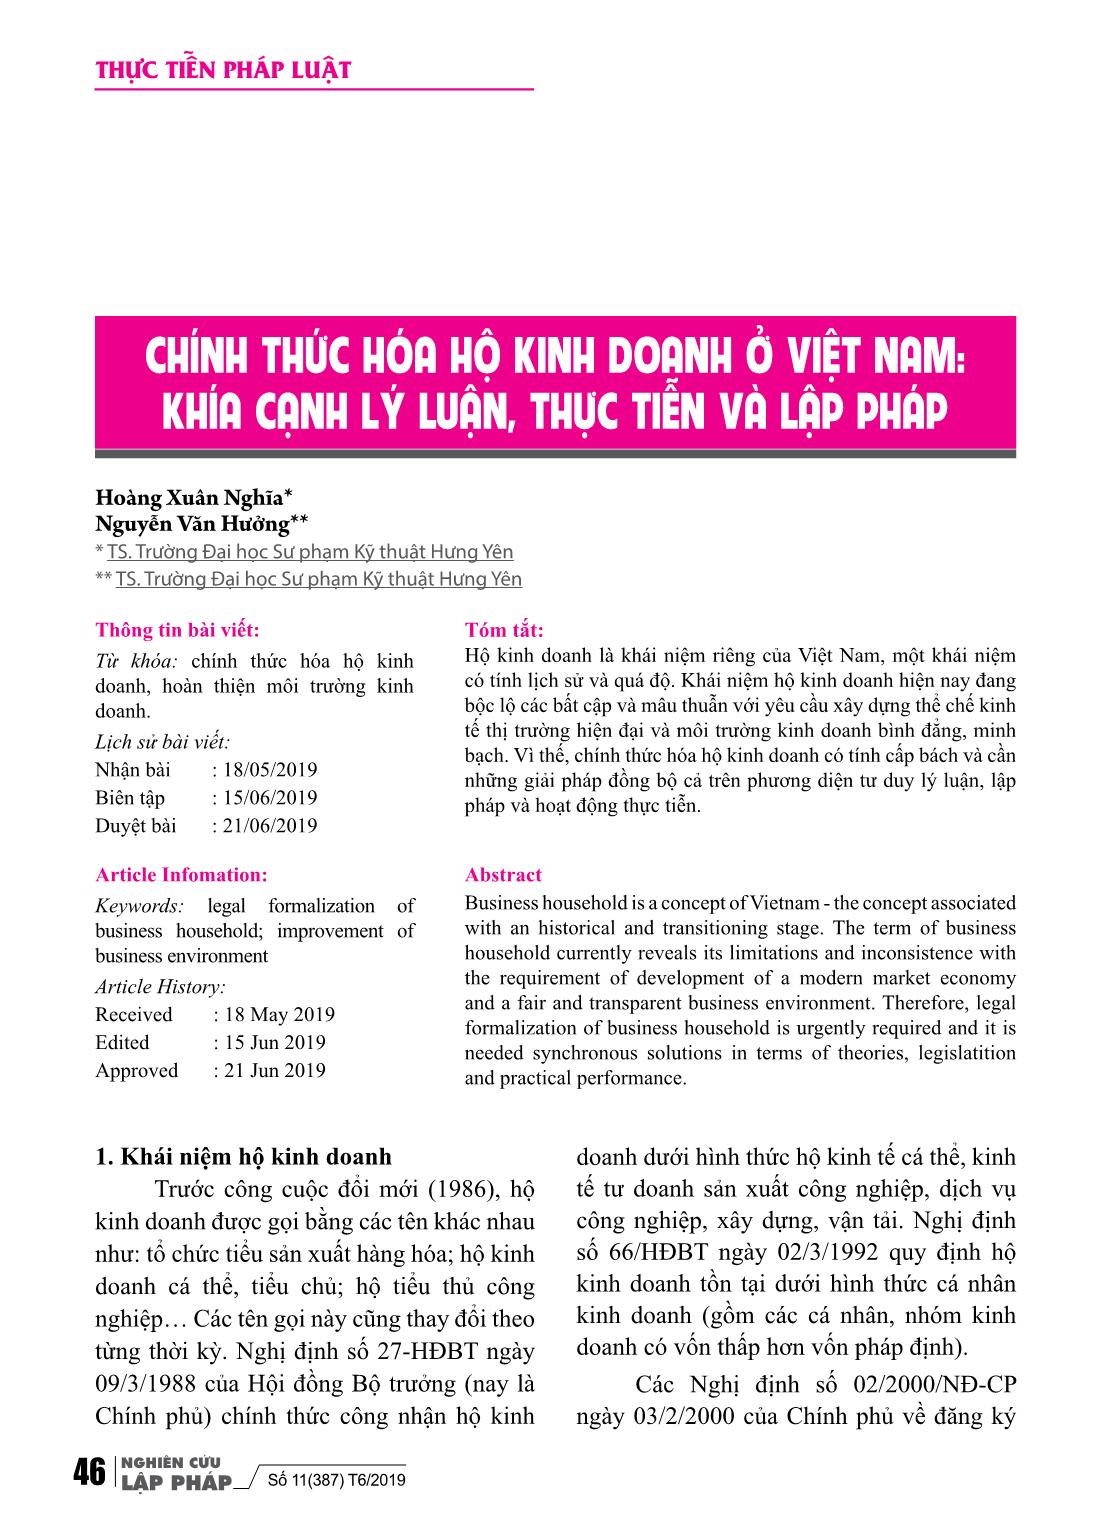 Chính thức hóa hộ kinh doanh ở Việt Nam: Khía cạnh lý luận, thực tiễn và lập pháp trang 1